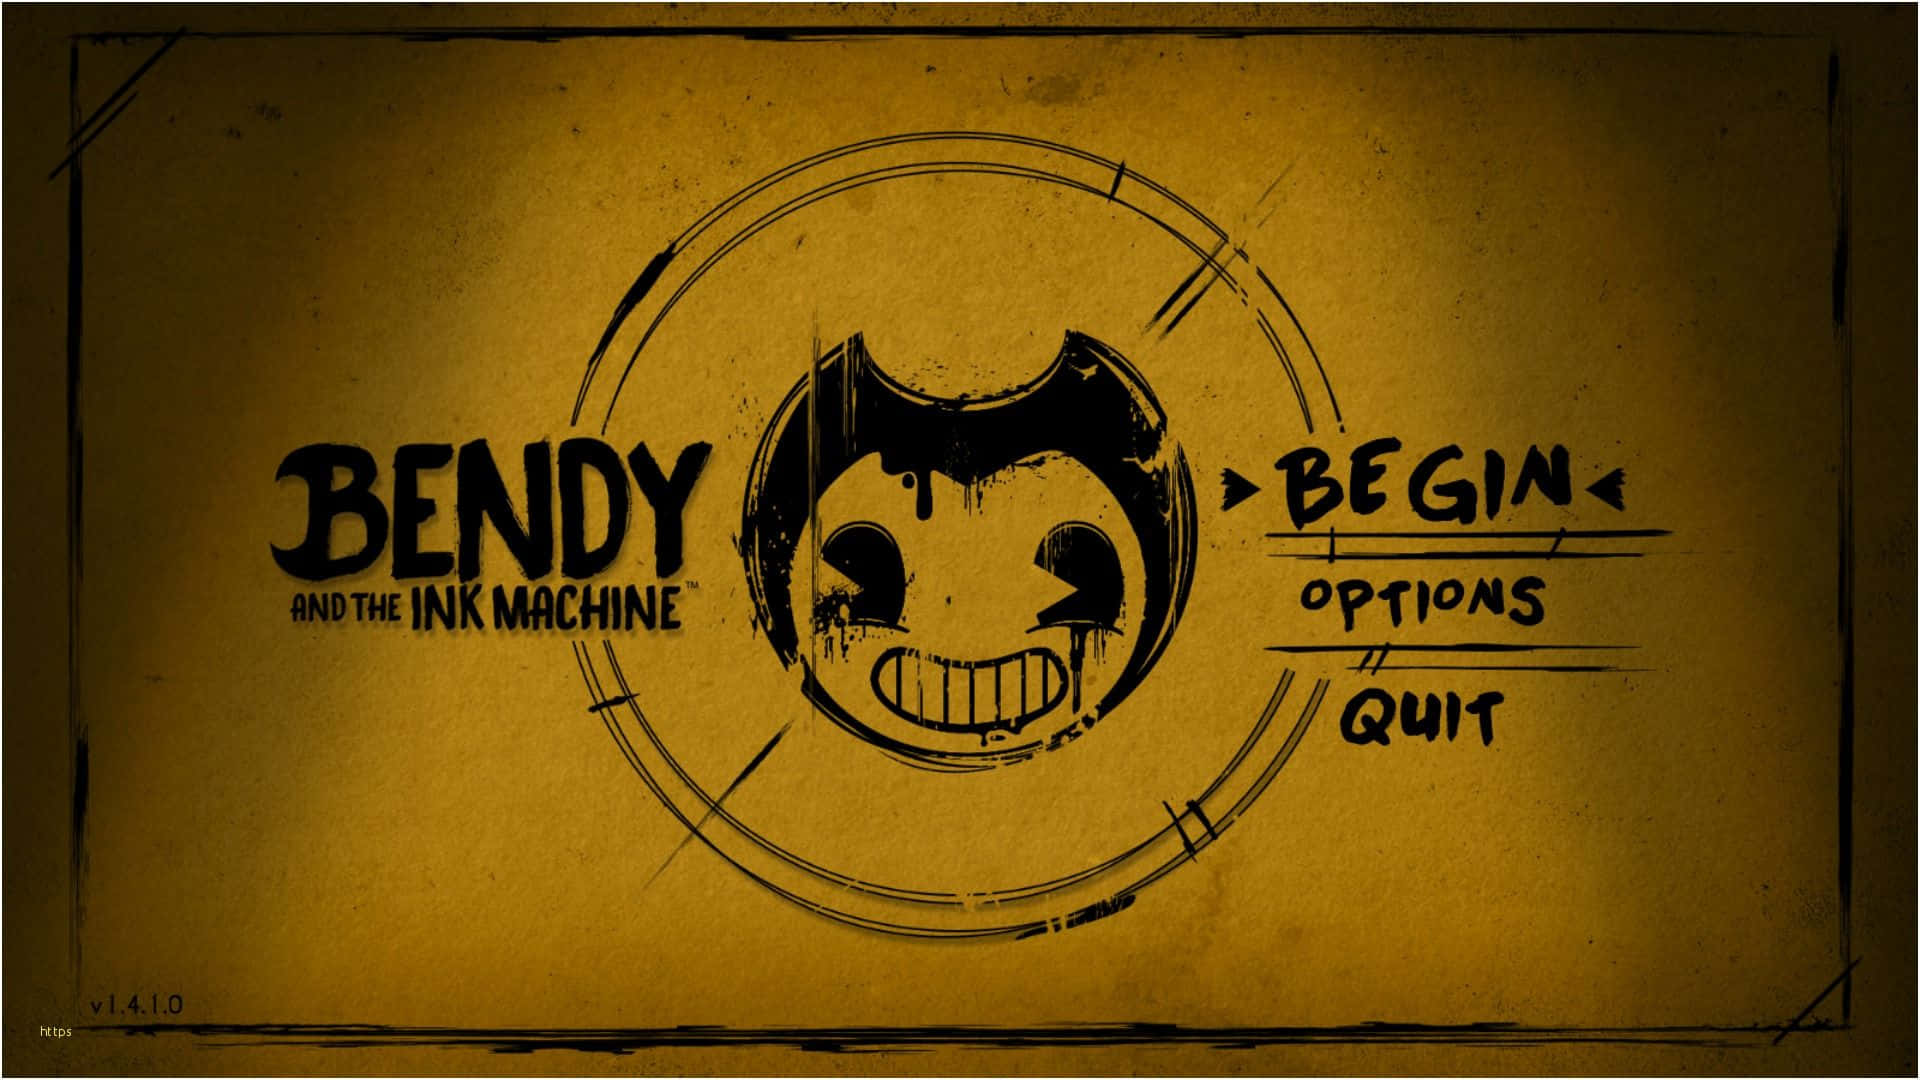 Bendy Begins - A Machine Opens A Gui